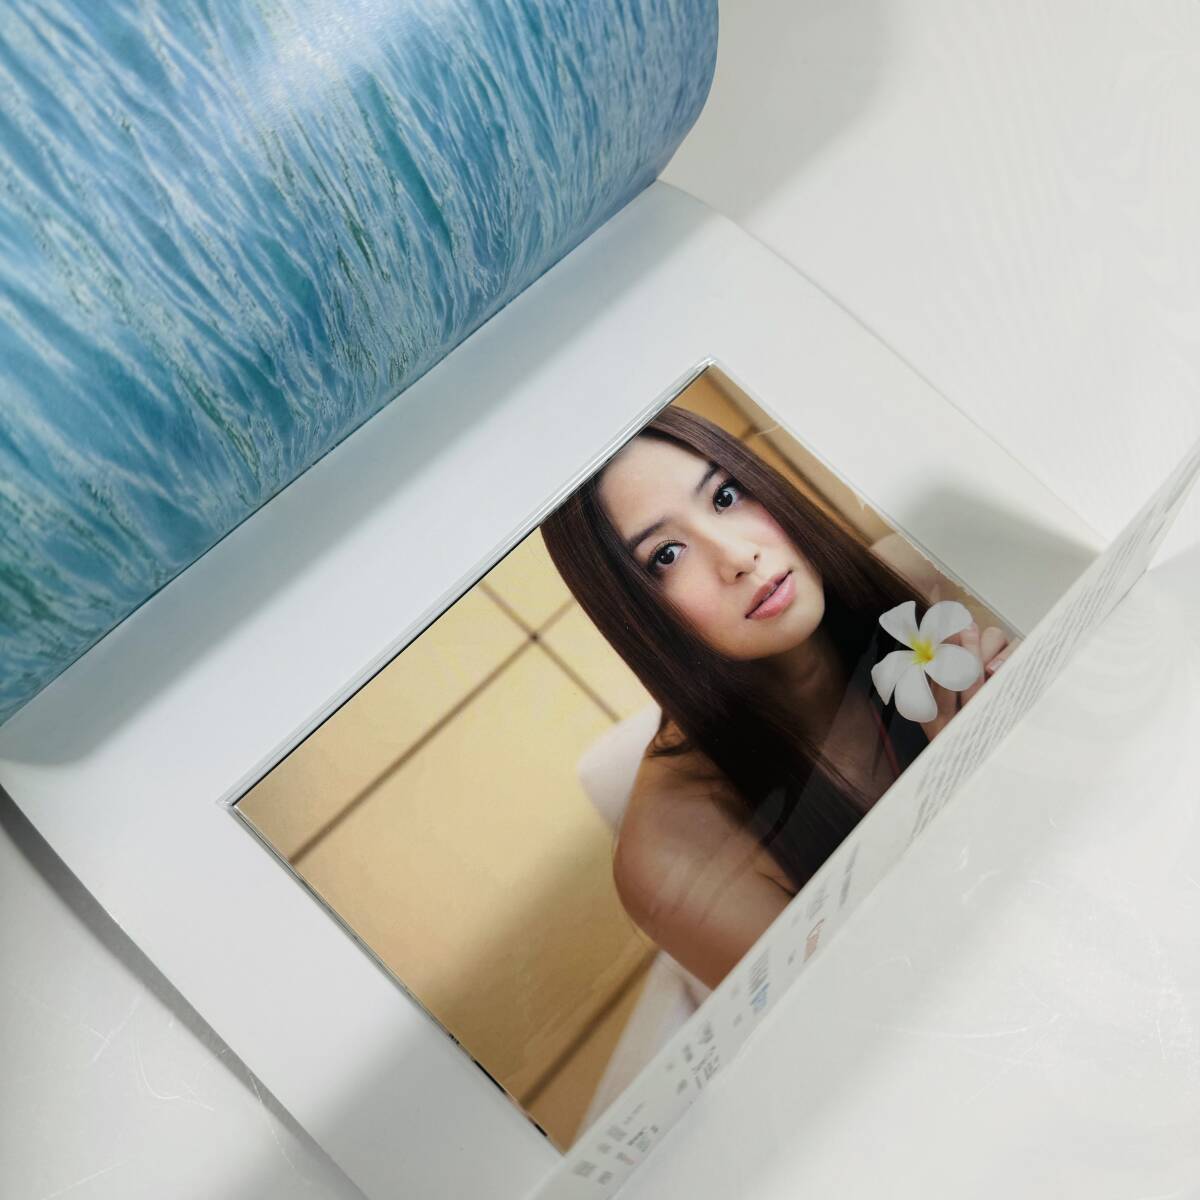 * Taiwan модель * женщина super белый [ звук нет ].( Bianca *bai)[ вода индиго цвет ..] фото эссе открытка ( нераспечатанный ) есть фотоальбом 